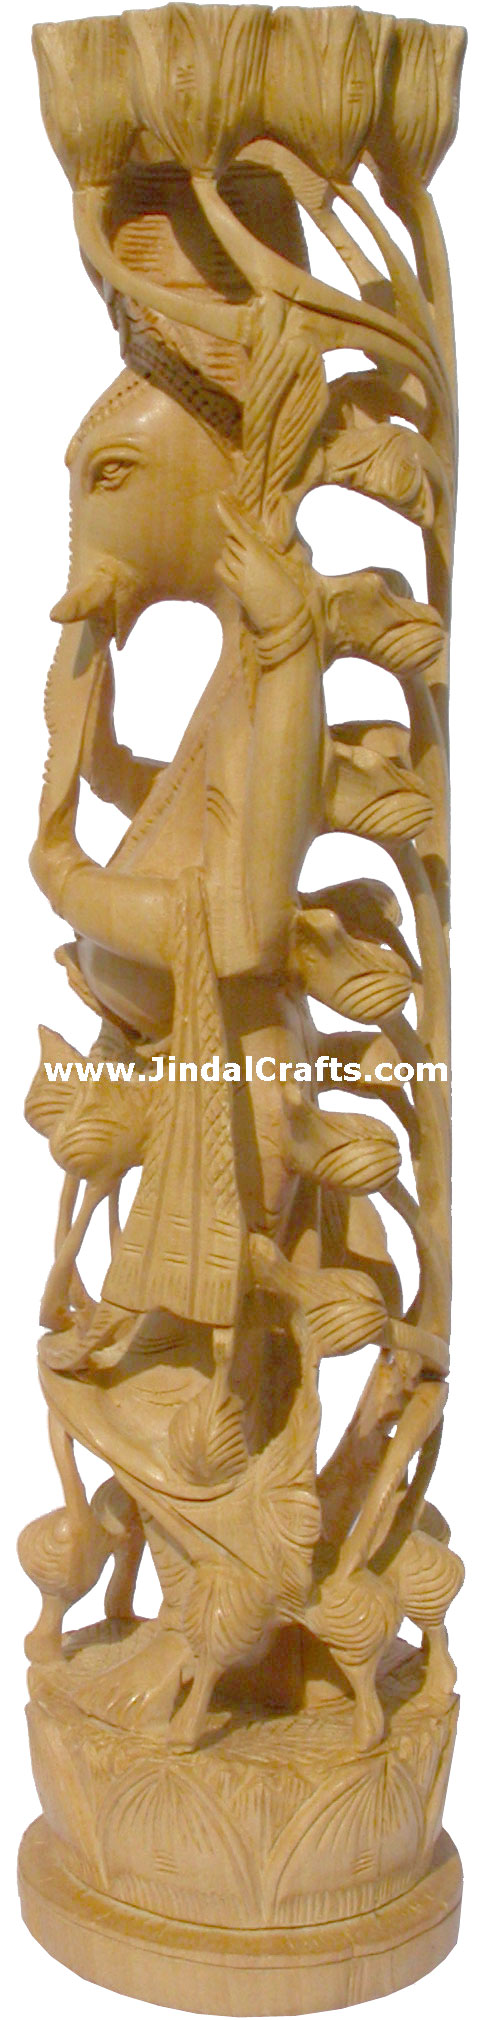 Wood Sculpture Lord Ganesha Figureine Hand Work India